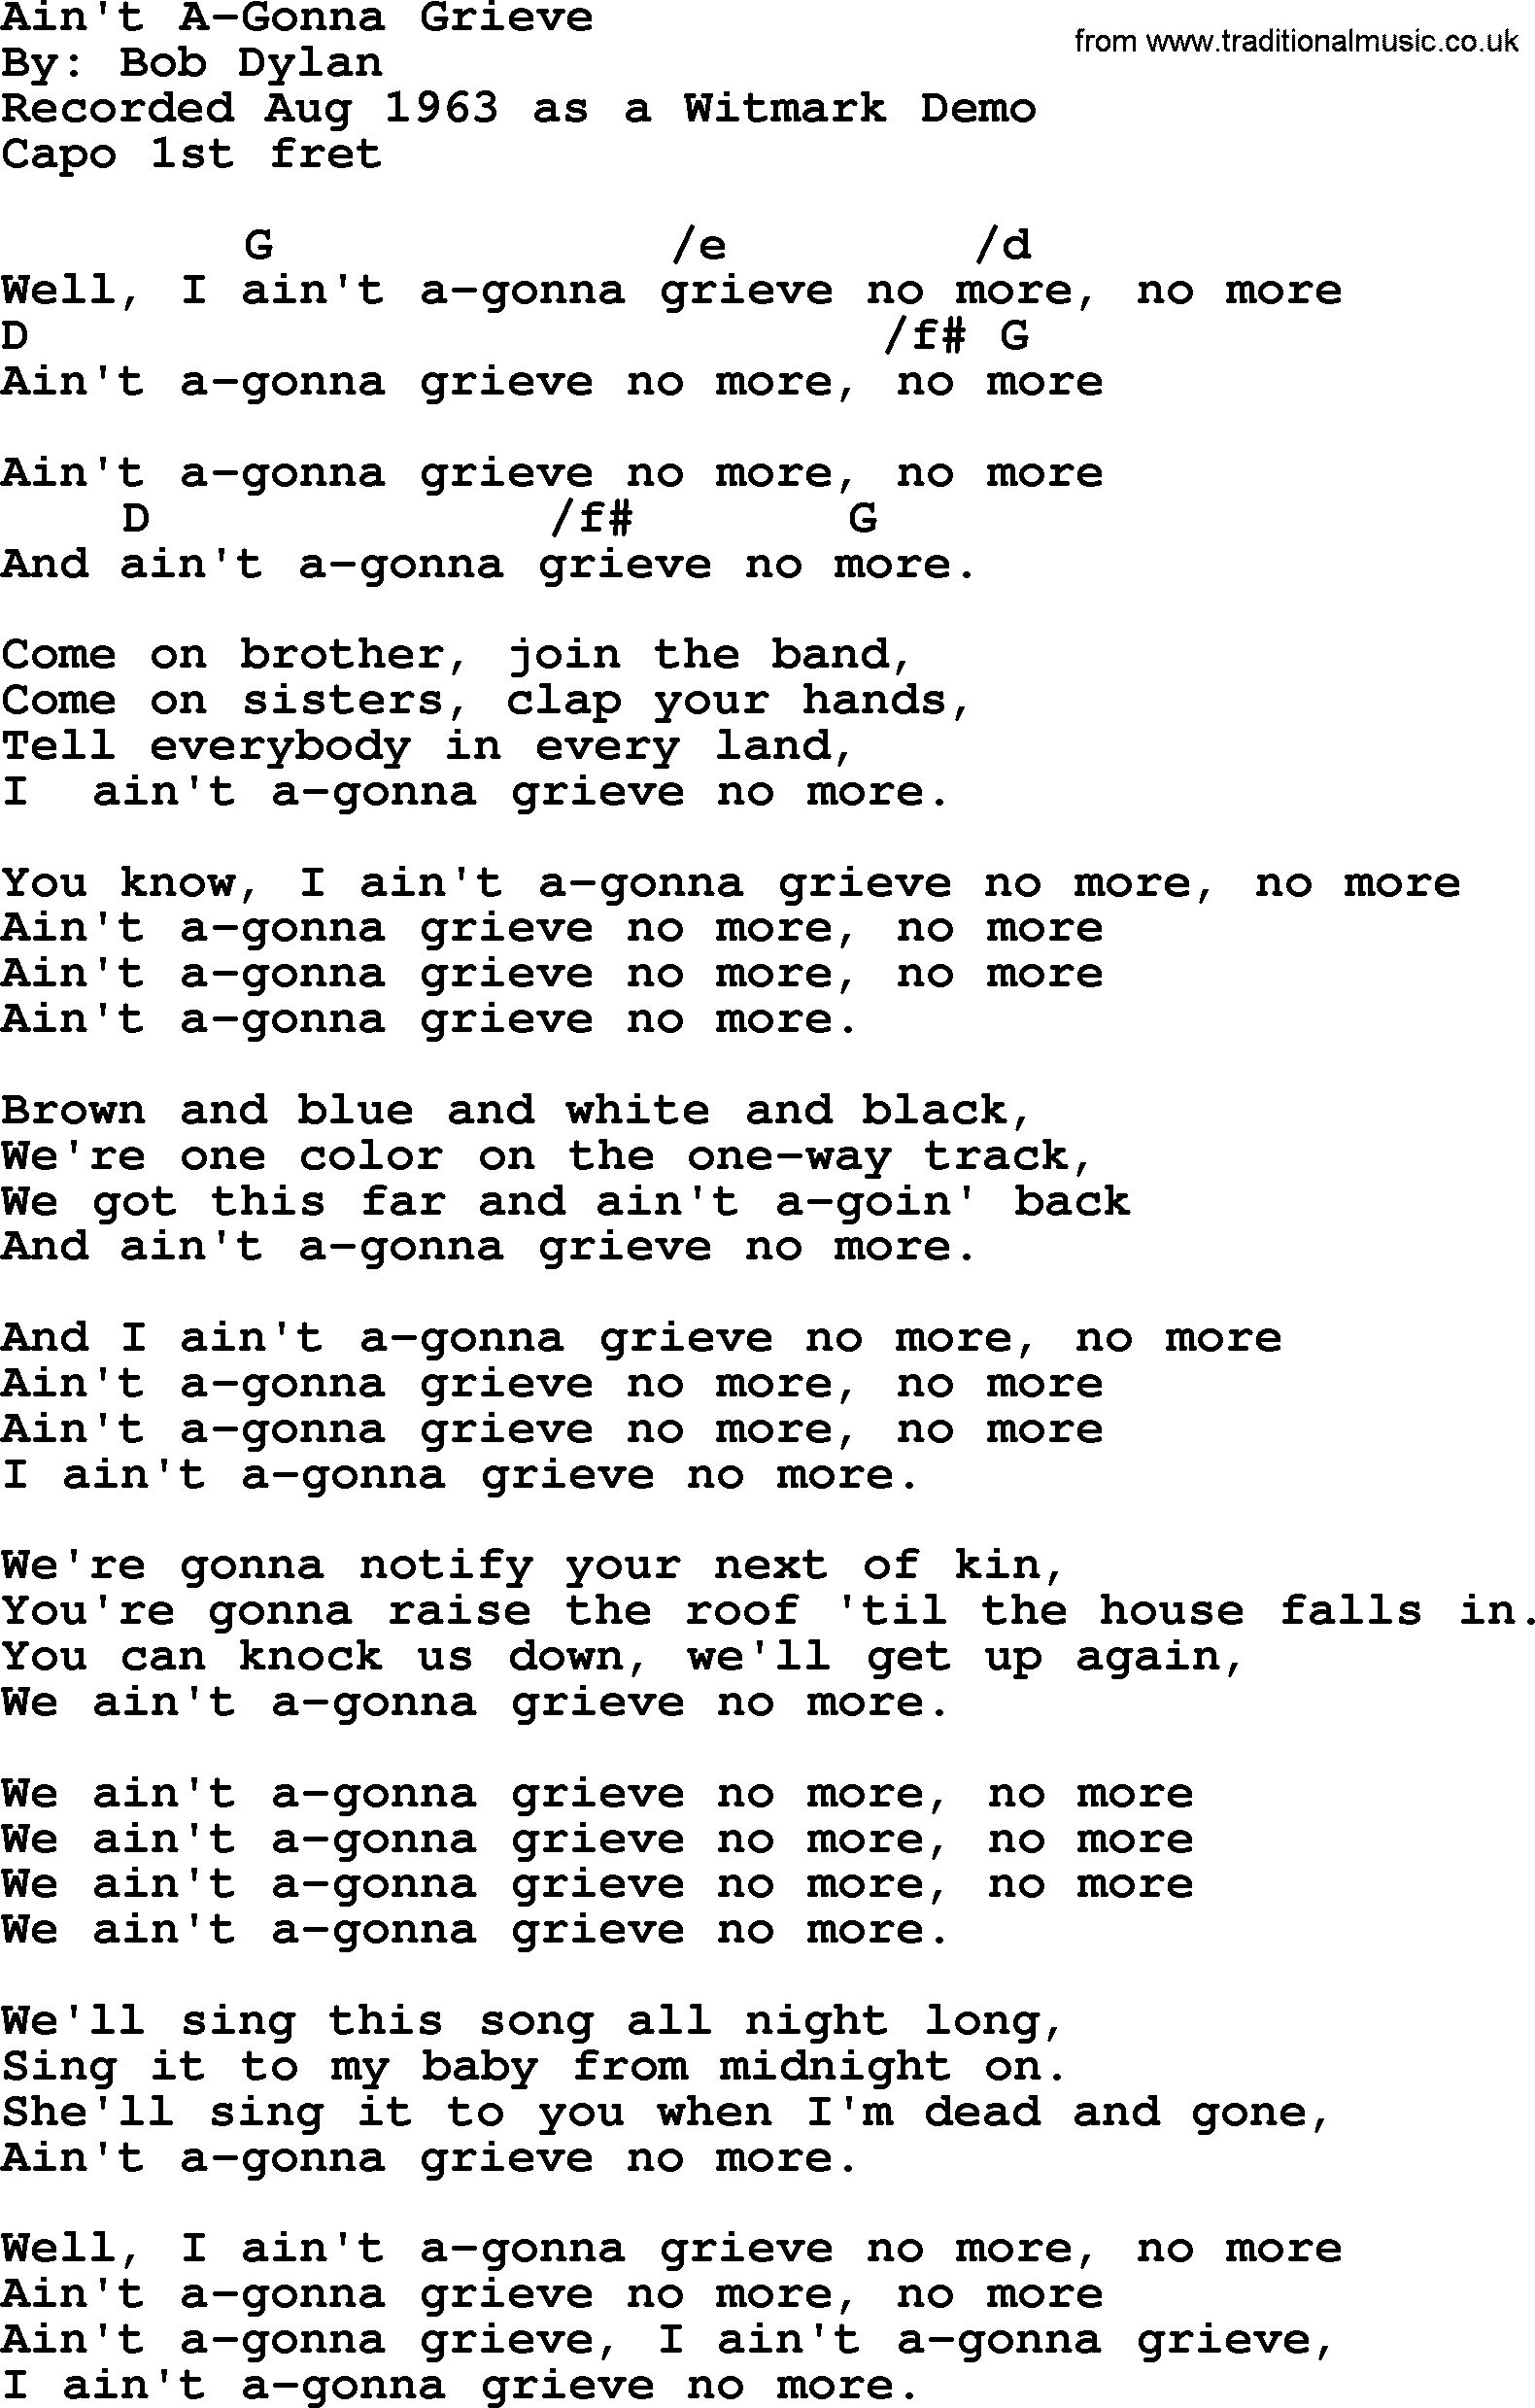 Bob Dylan song, lyrics with chords - Ain't A-Gonna Grieve